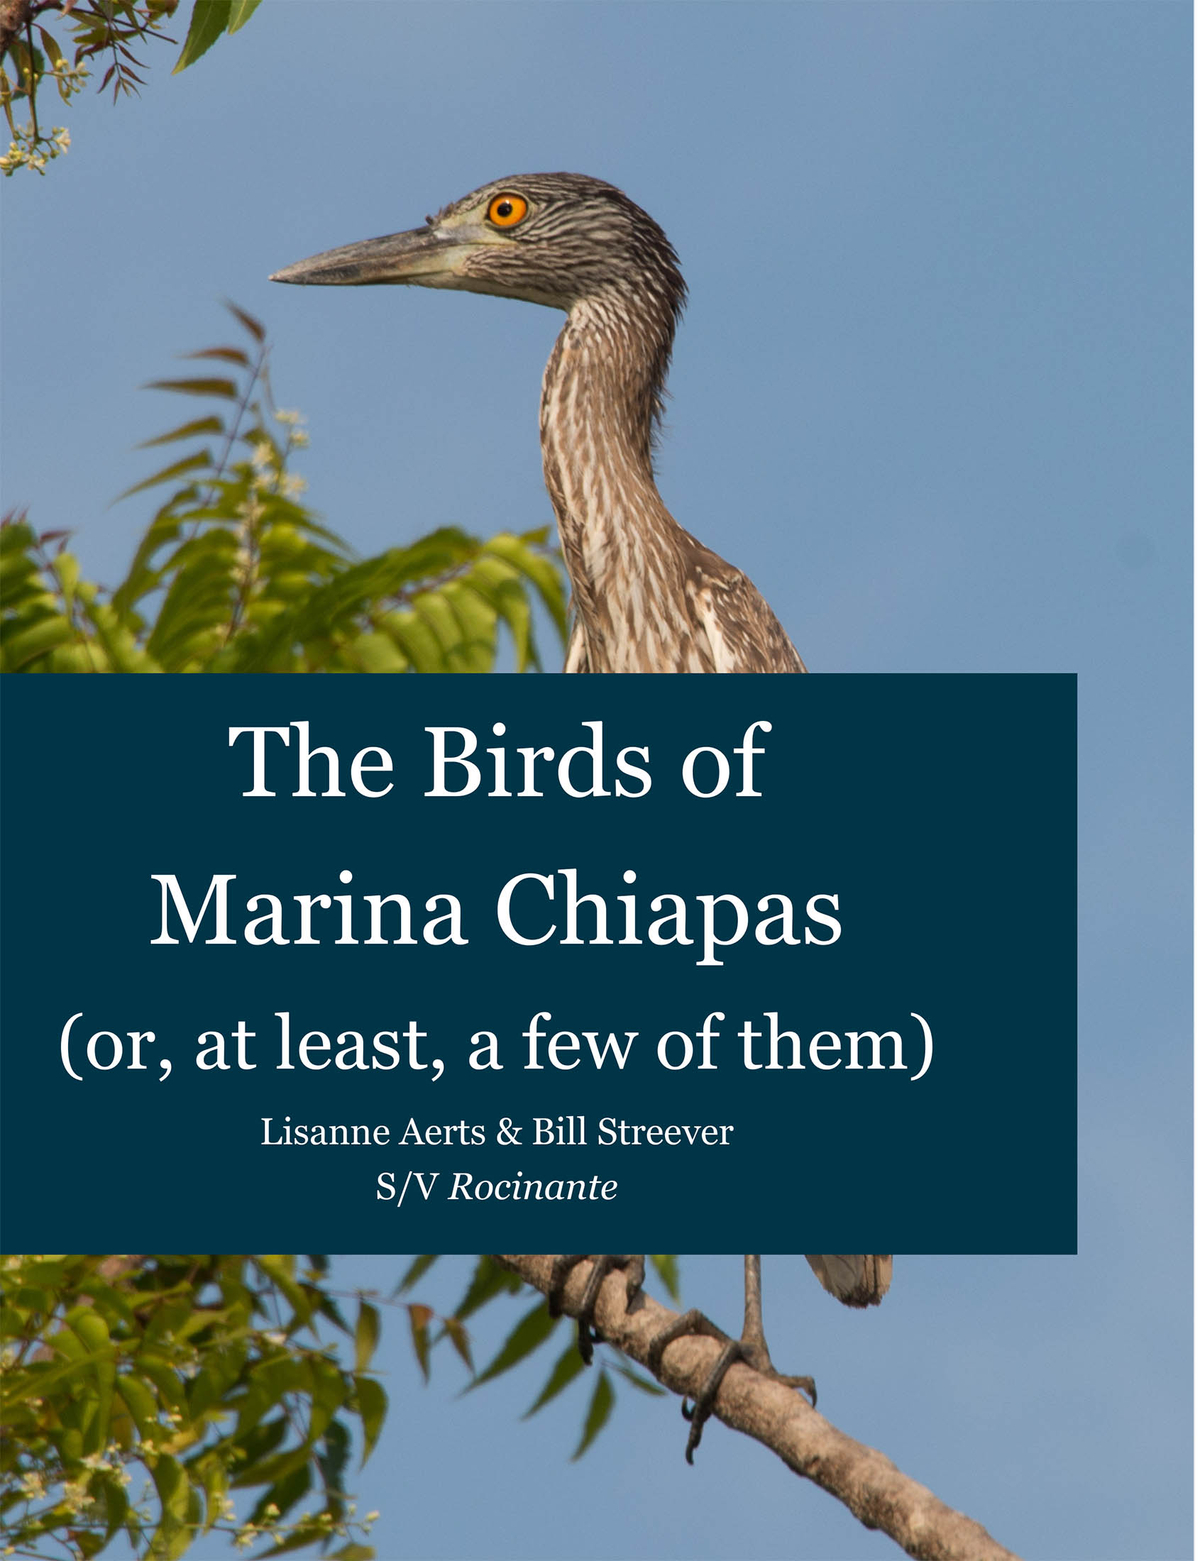 The birds of Chiapas